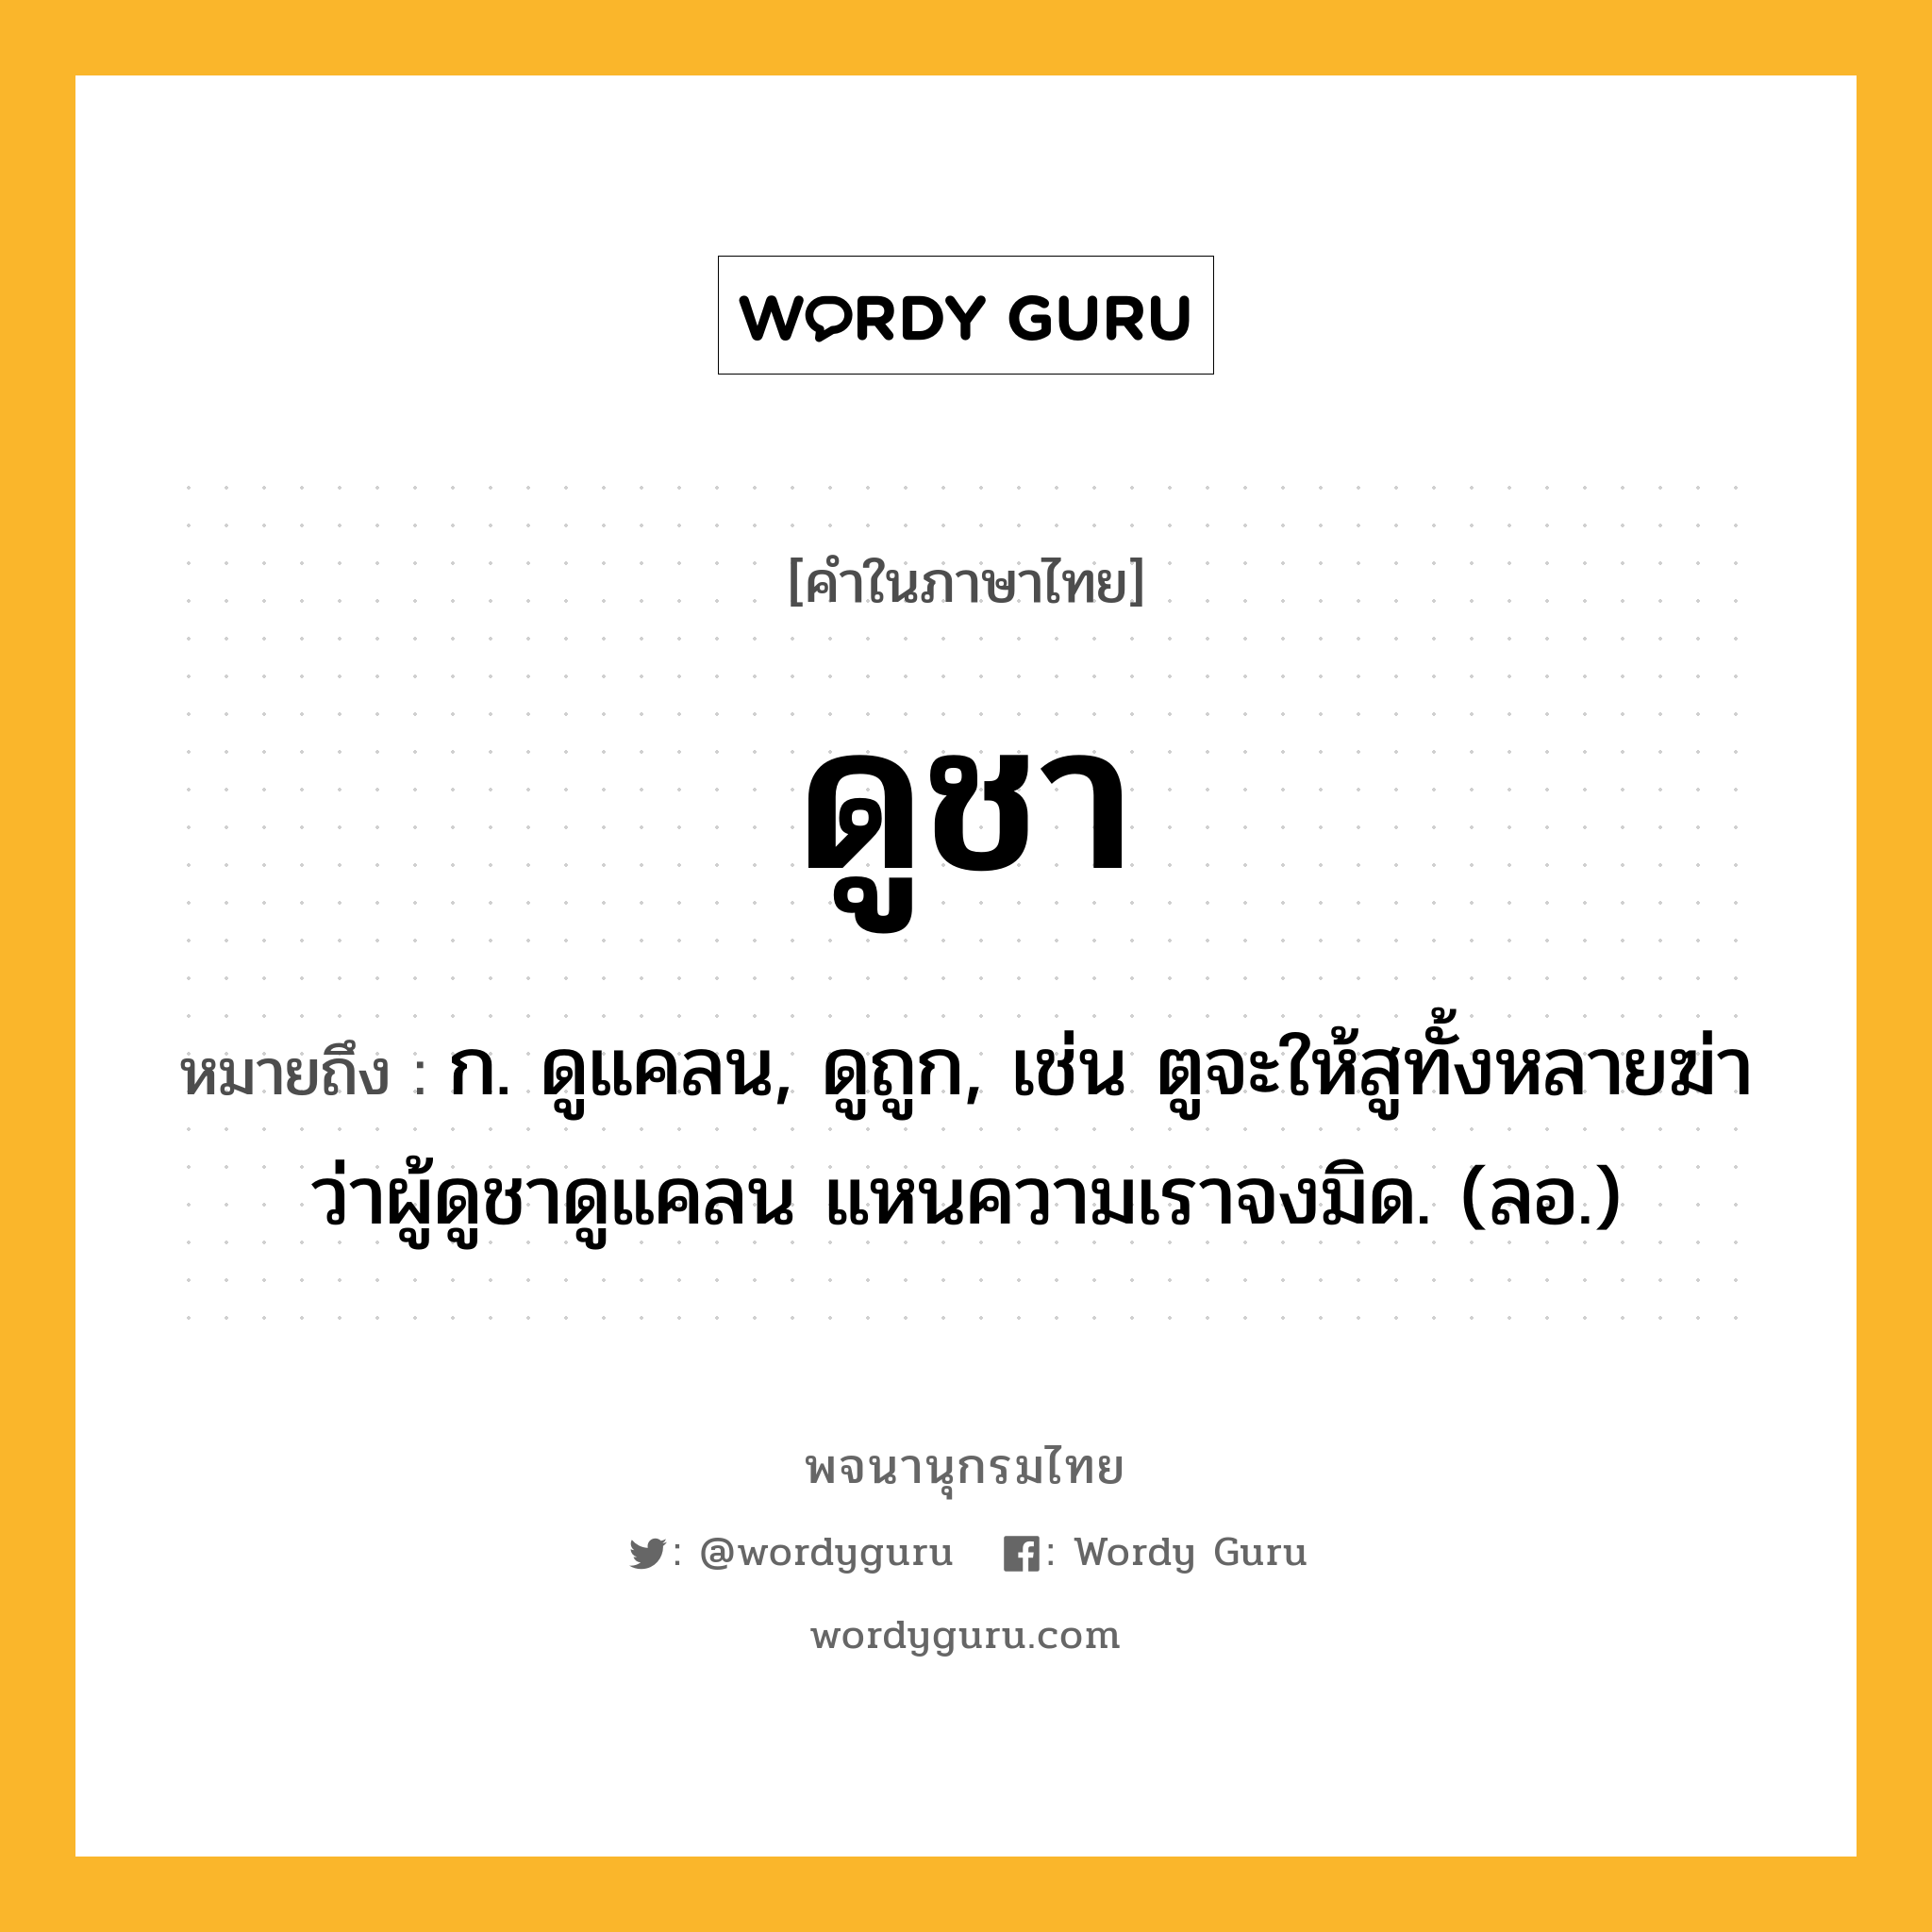 ดูชา ความหมาย หมายถึงอะไร?, คำในภาษาไทย ดูชา หมายถึง ก. ดูแคลน, ดูถูก, เช่น ตูจะให้สูทั้งหลายฆ่า ว่าผู้ดูชาดูแคลน แหนความเราจงมิด. (ลอ.)